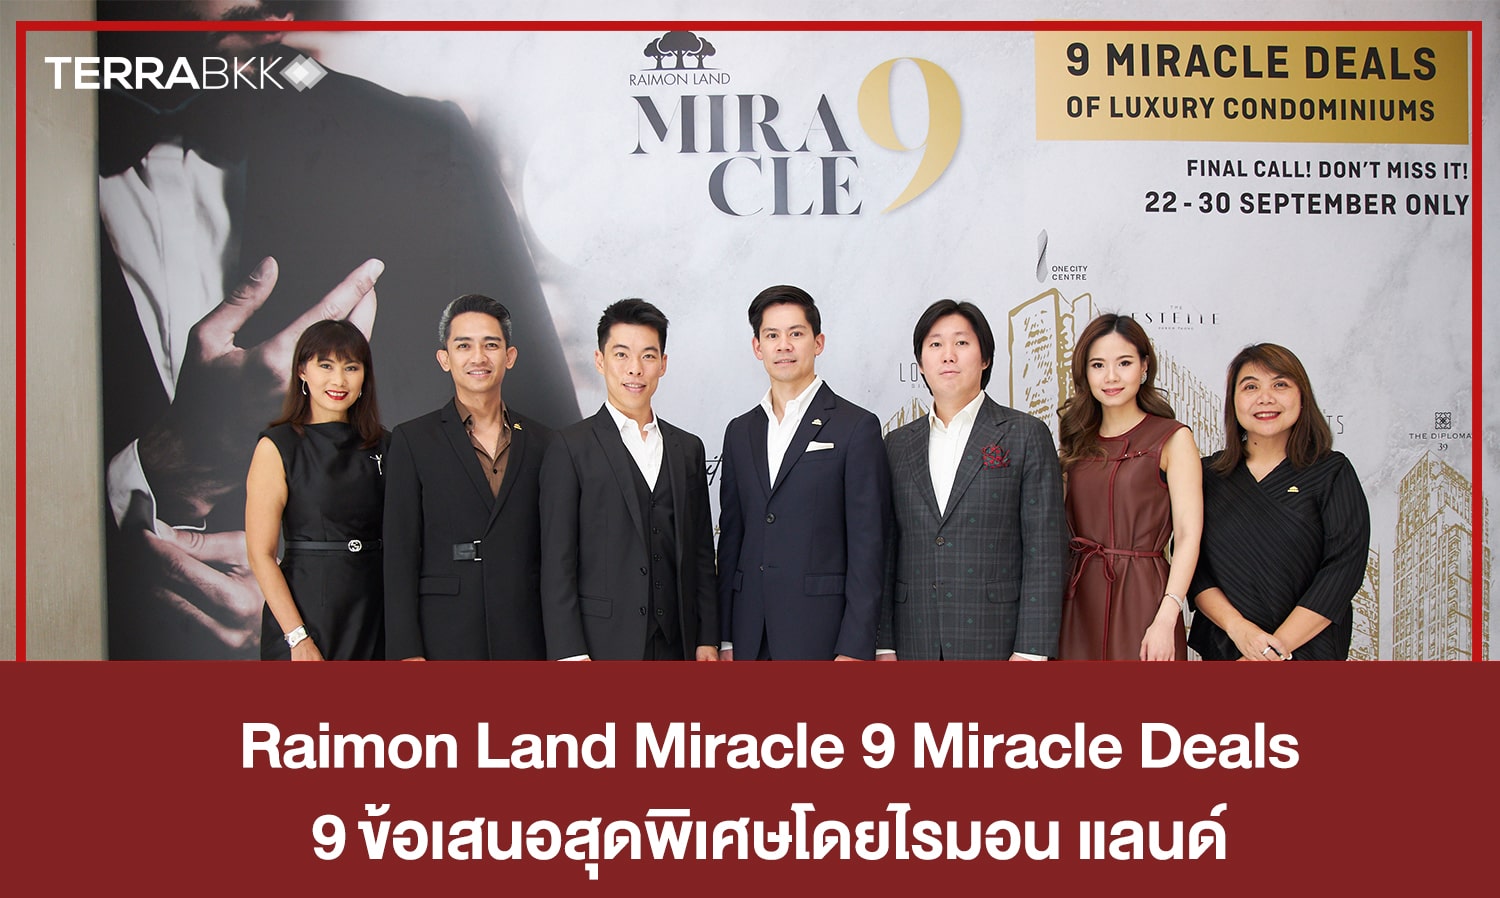 “Raimon Land Miracle 9 Miracle Deals” ที่สุดของงานลักซ์ชัวรี่คอนโดแห่งปี  กับ 9 ข้อเสนอสุดพิเศษโดยไรมอน แลนด์